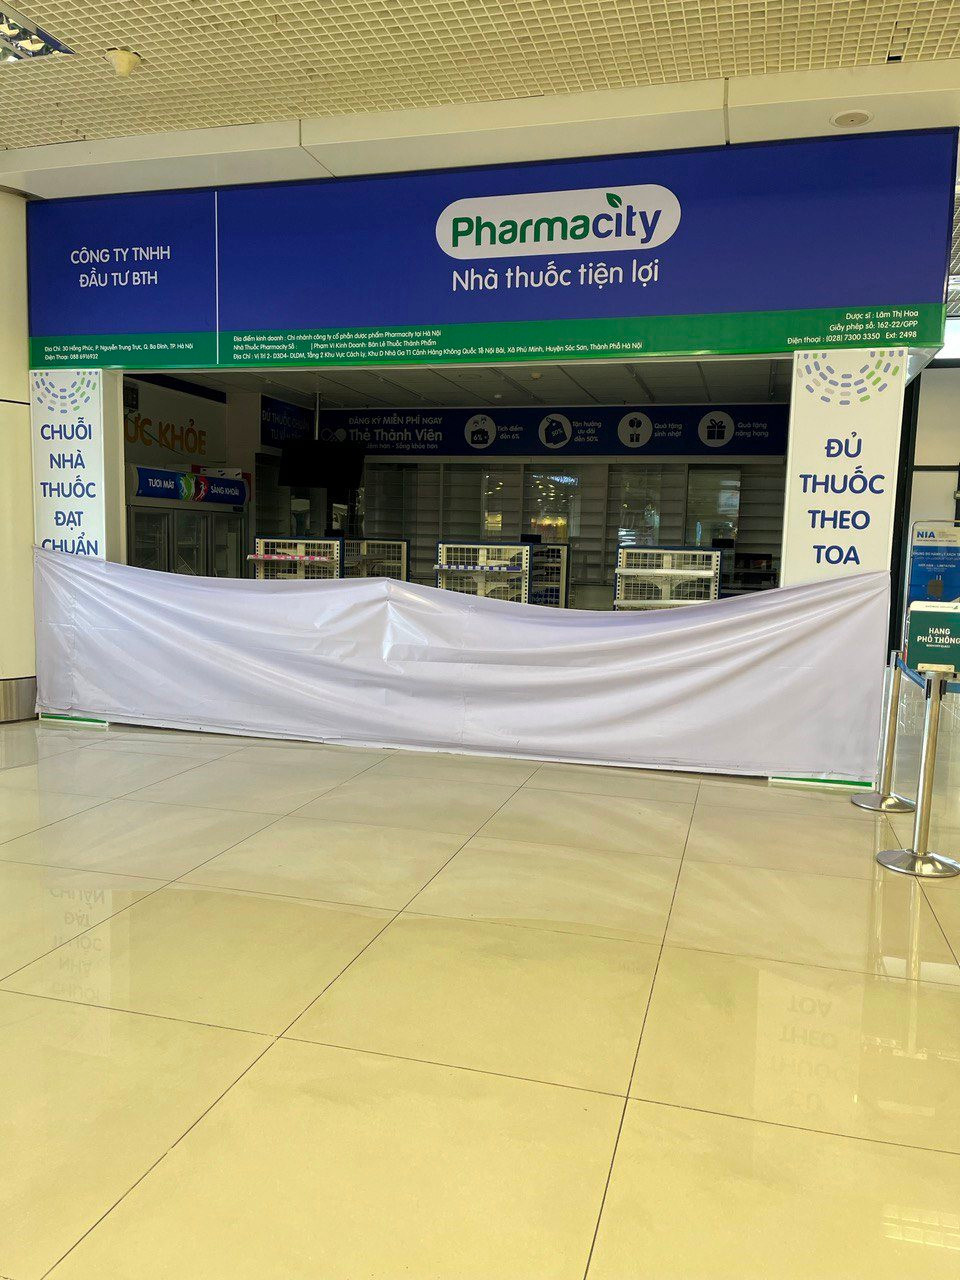 Thế giới di động "chốt sổ" hơn 500 nhà thuốc An Khang, còn Pharmacity chuẩn bị mở nhà thuốc ở Sân bay Nội Bài?